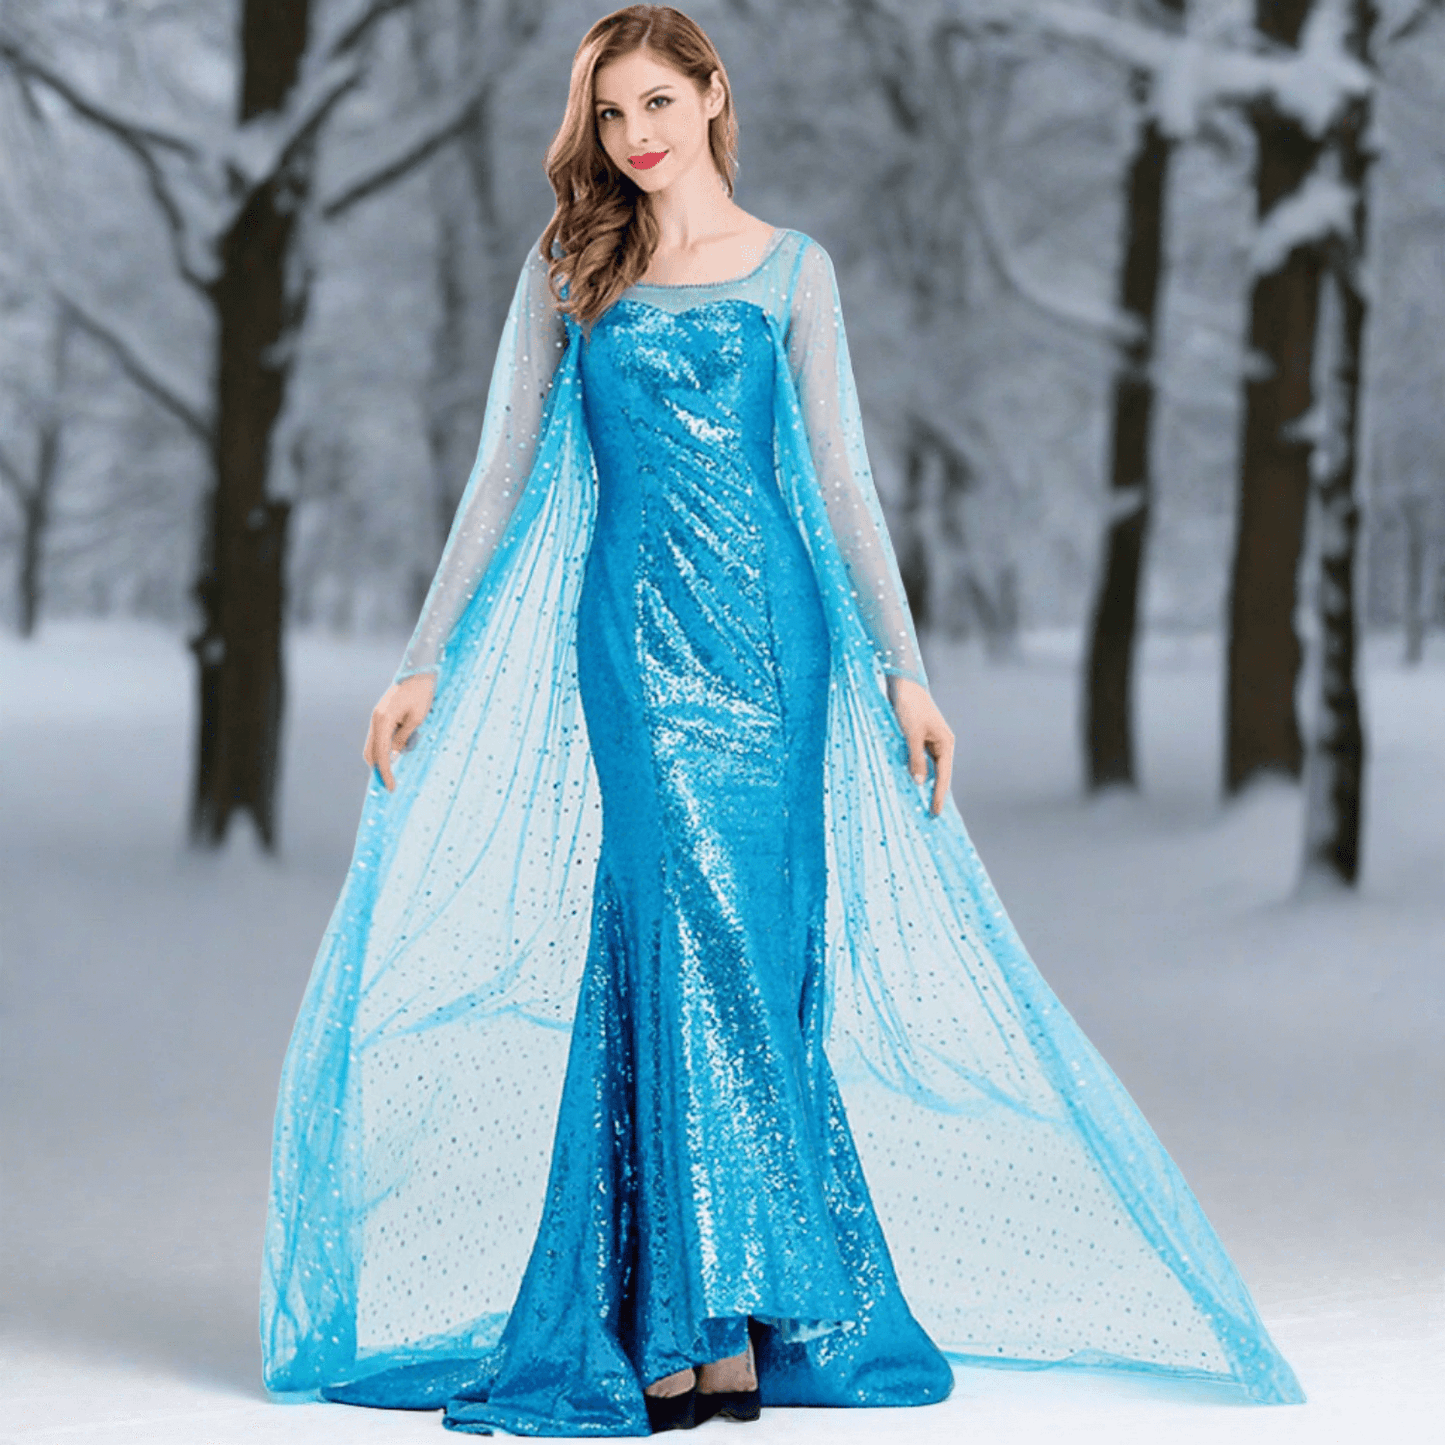 Princess Elsa Dress Sequin Mesh Long Elsa Costume Adult Snow Queen Costume